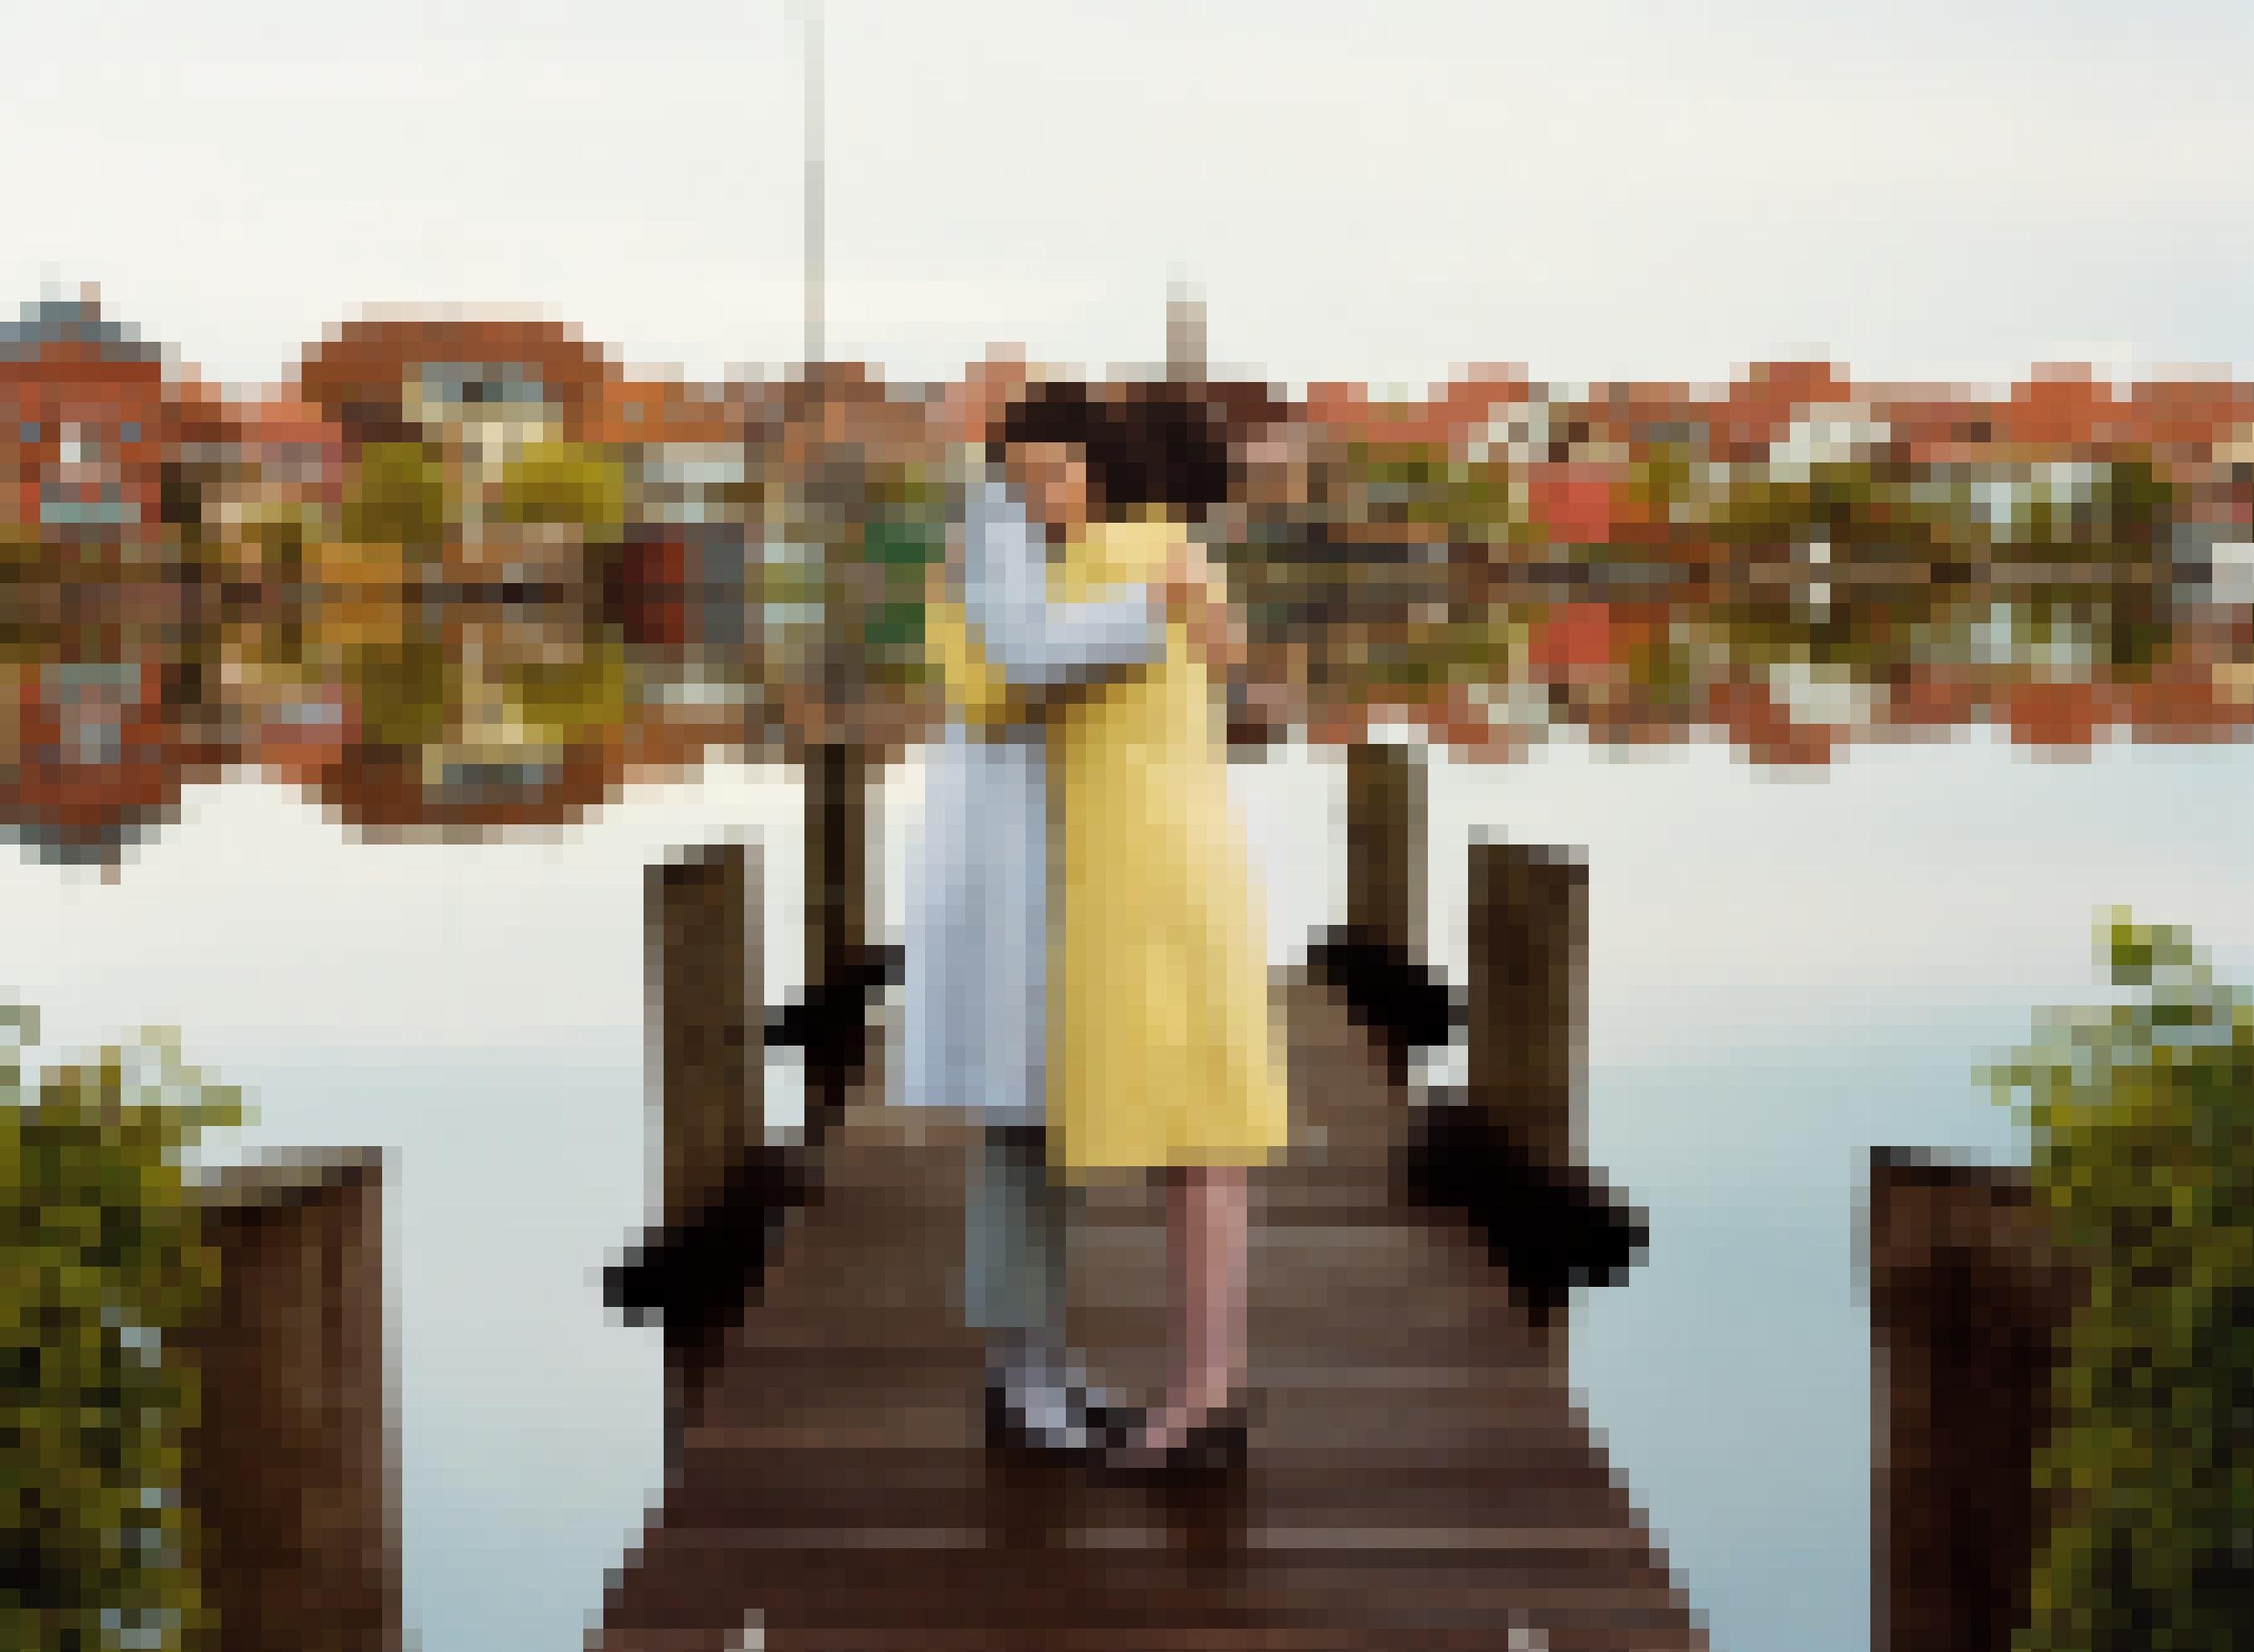 Zwei Frauen umarmen sich auf einem Steg. Im Hintergrund spiegeln sich die Häuser des Ortes im Wasser.